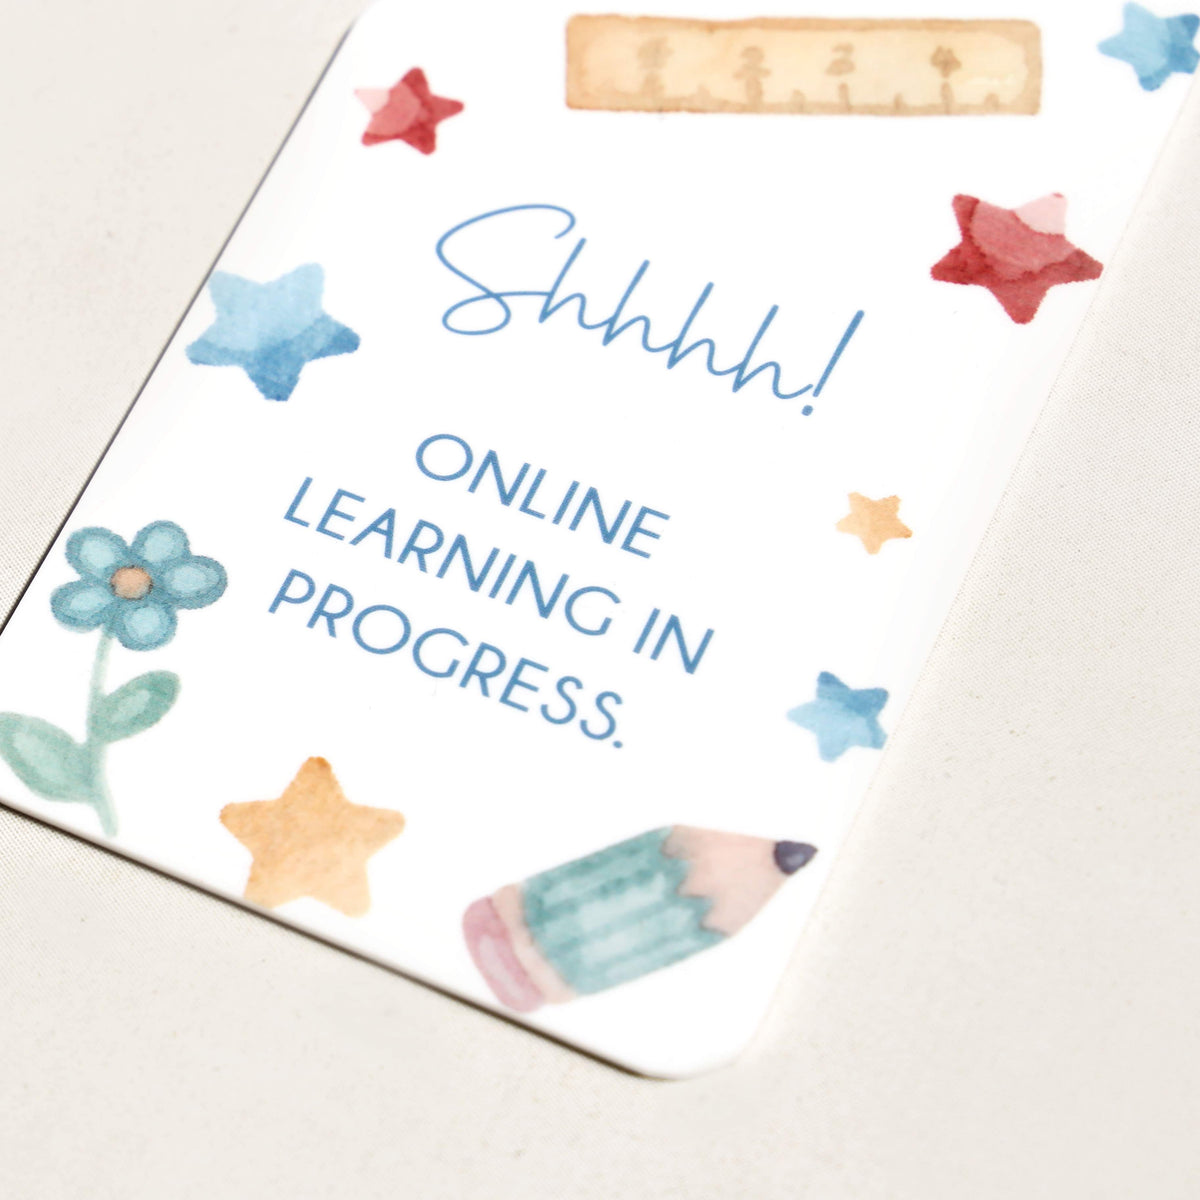 Online learning in progress - Door Hanger